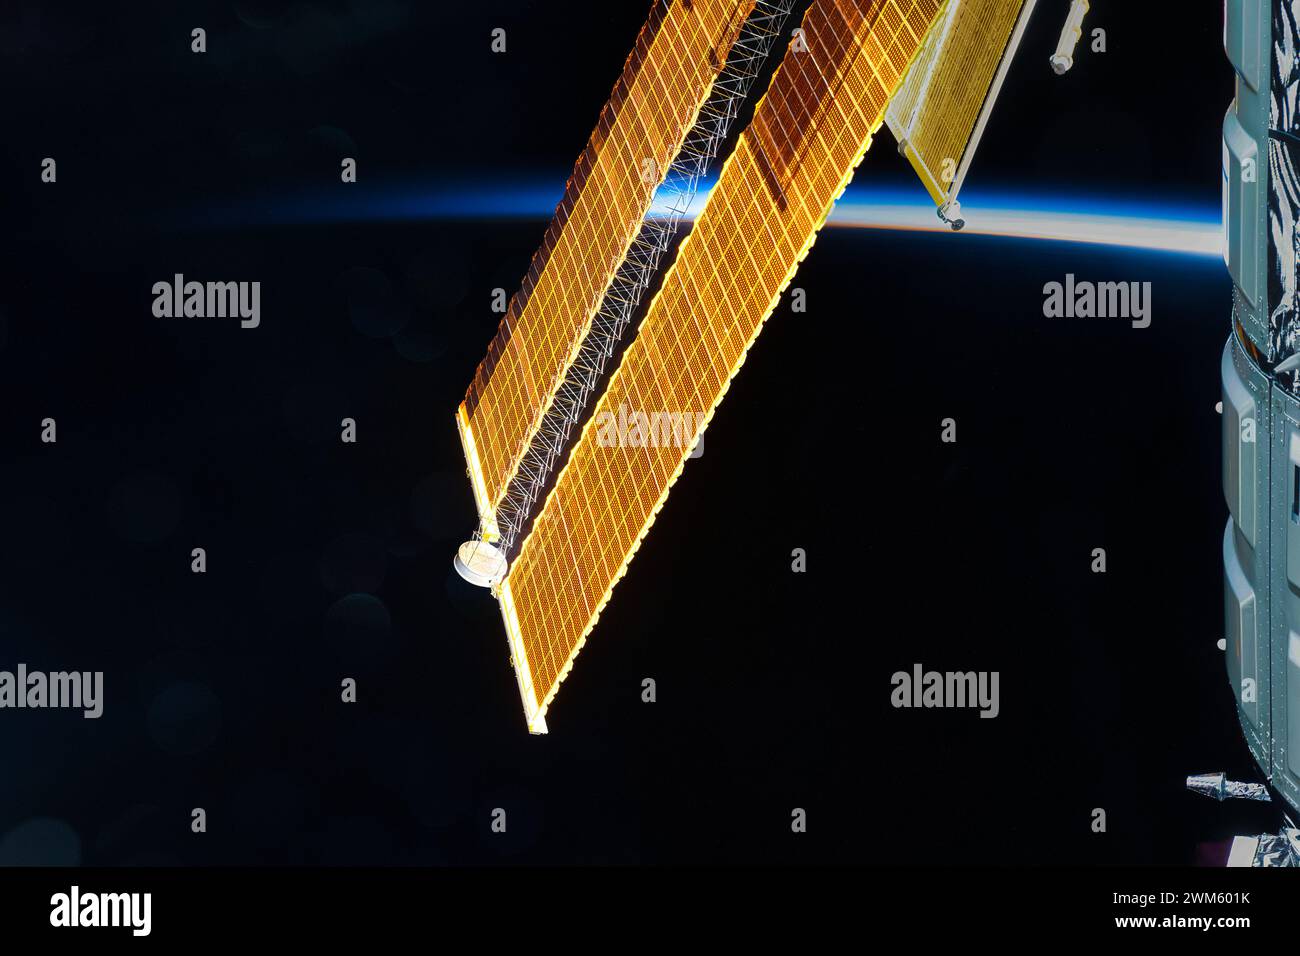 Pannello solare ISS o stazione spaziale Internazionale. Miglioramento digitale di un'immagine da parte della NASA Foto Stock